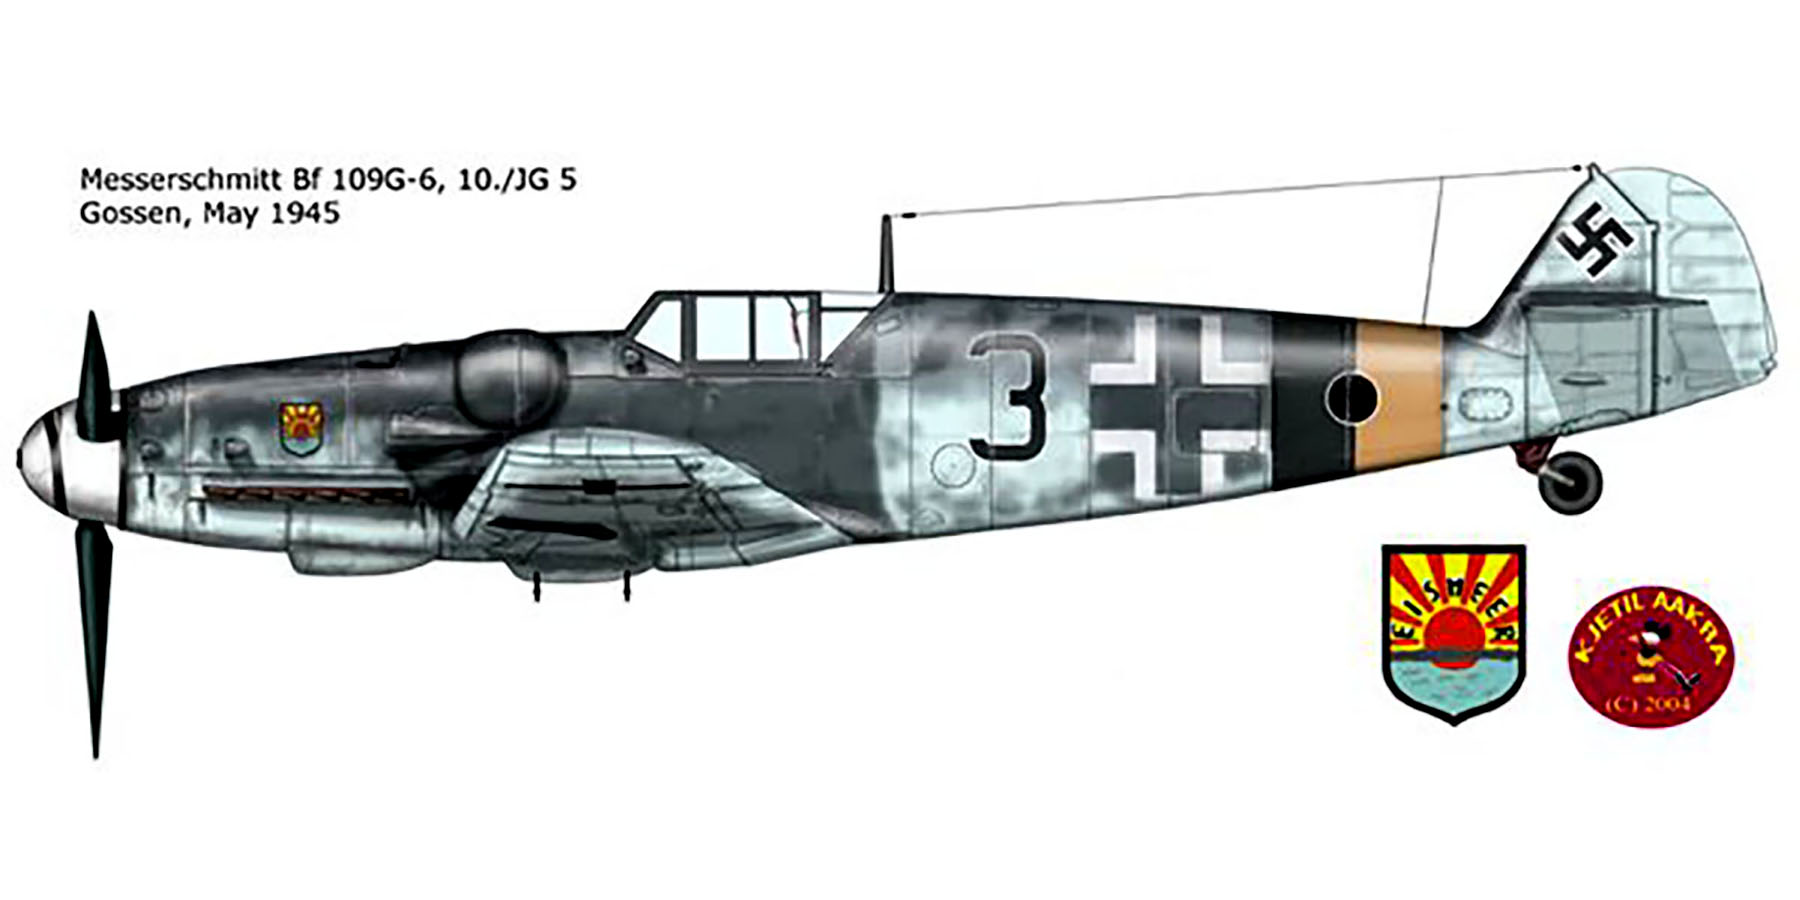 Messerschmitt Bf 109G6R3 10.JG5 Black 3 Gossen Norway May 1945 0A